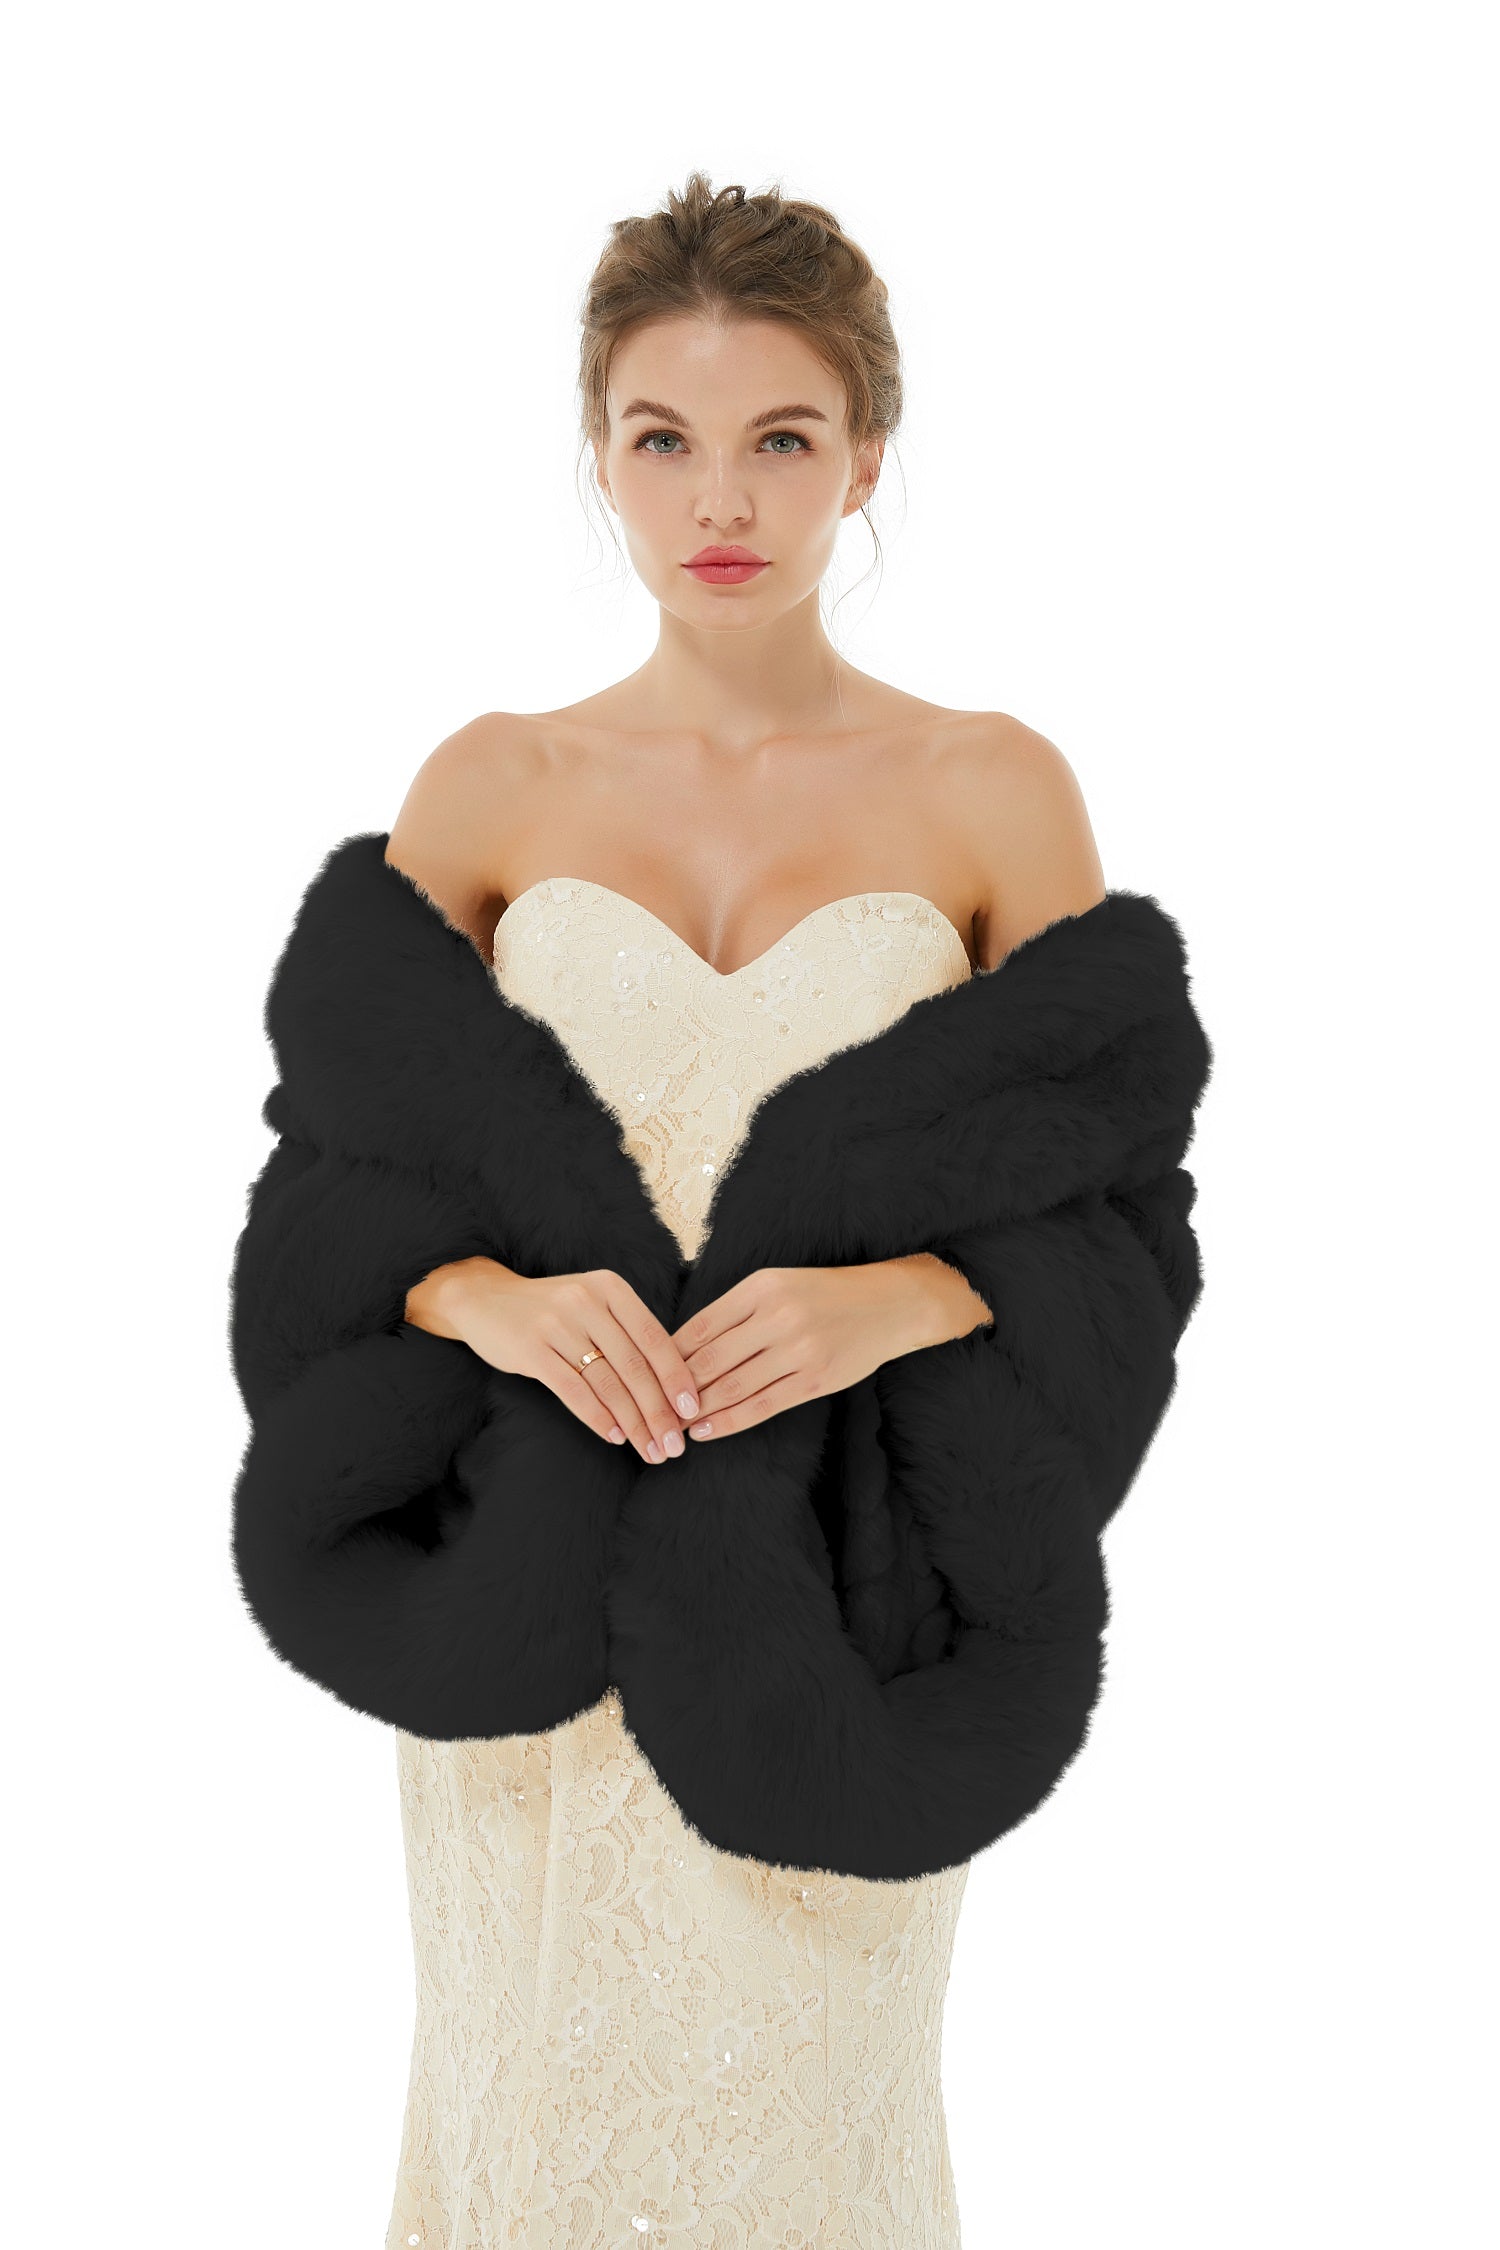 Warm Black Faux Fur Wrap for Winter Weddings - lulusllly